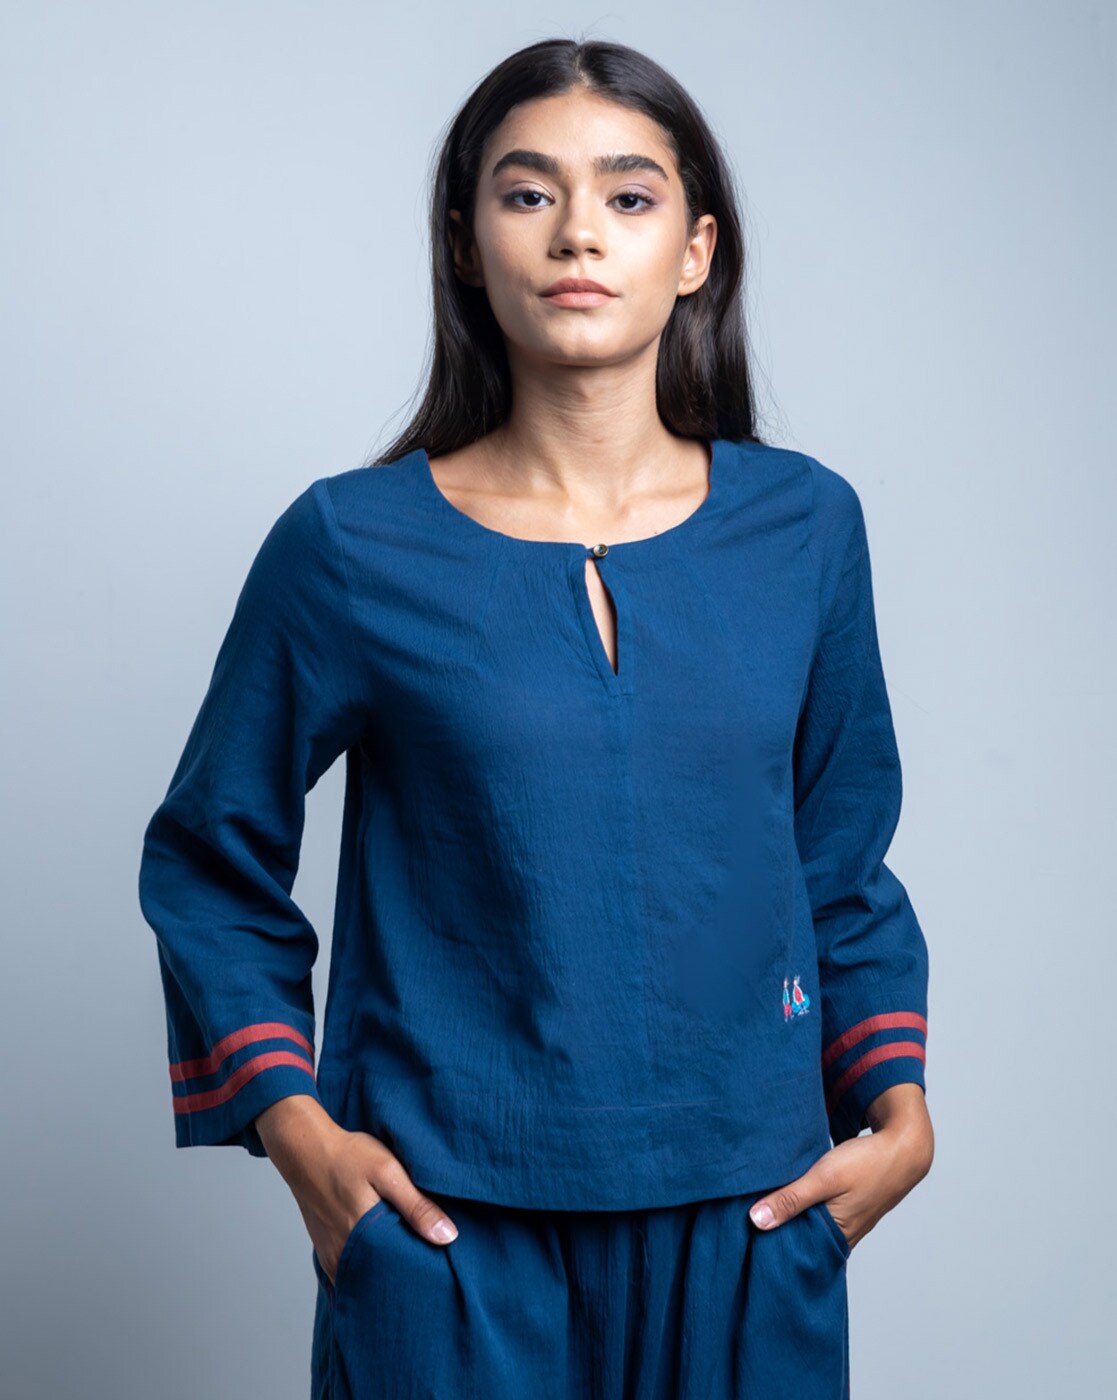 Buy Bouji Full Sleeves Mesh Crop Top, Blue Color Women